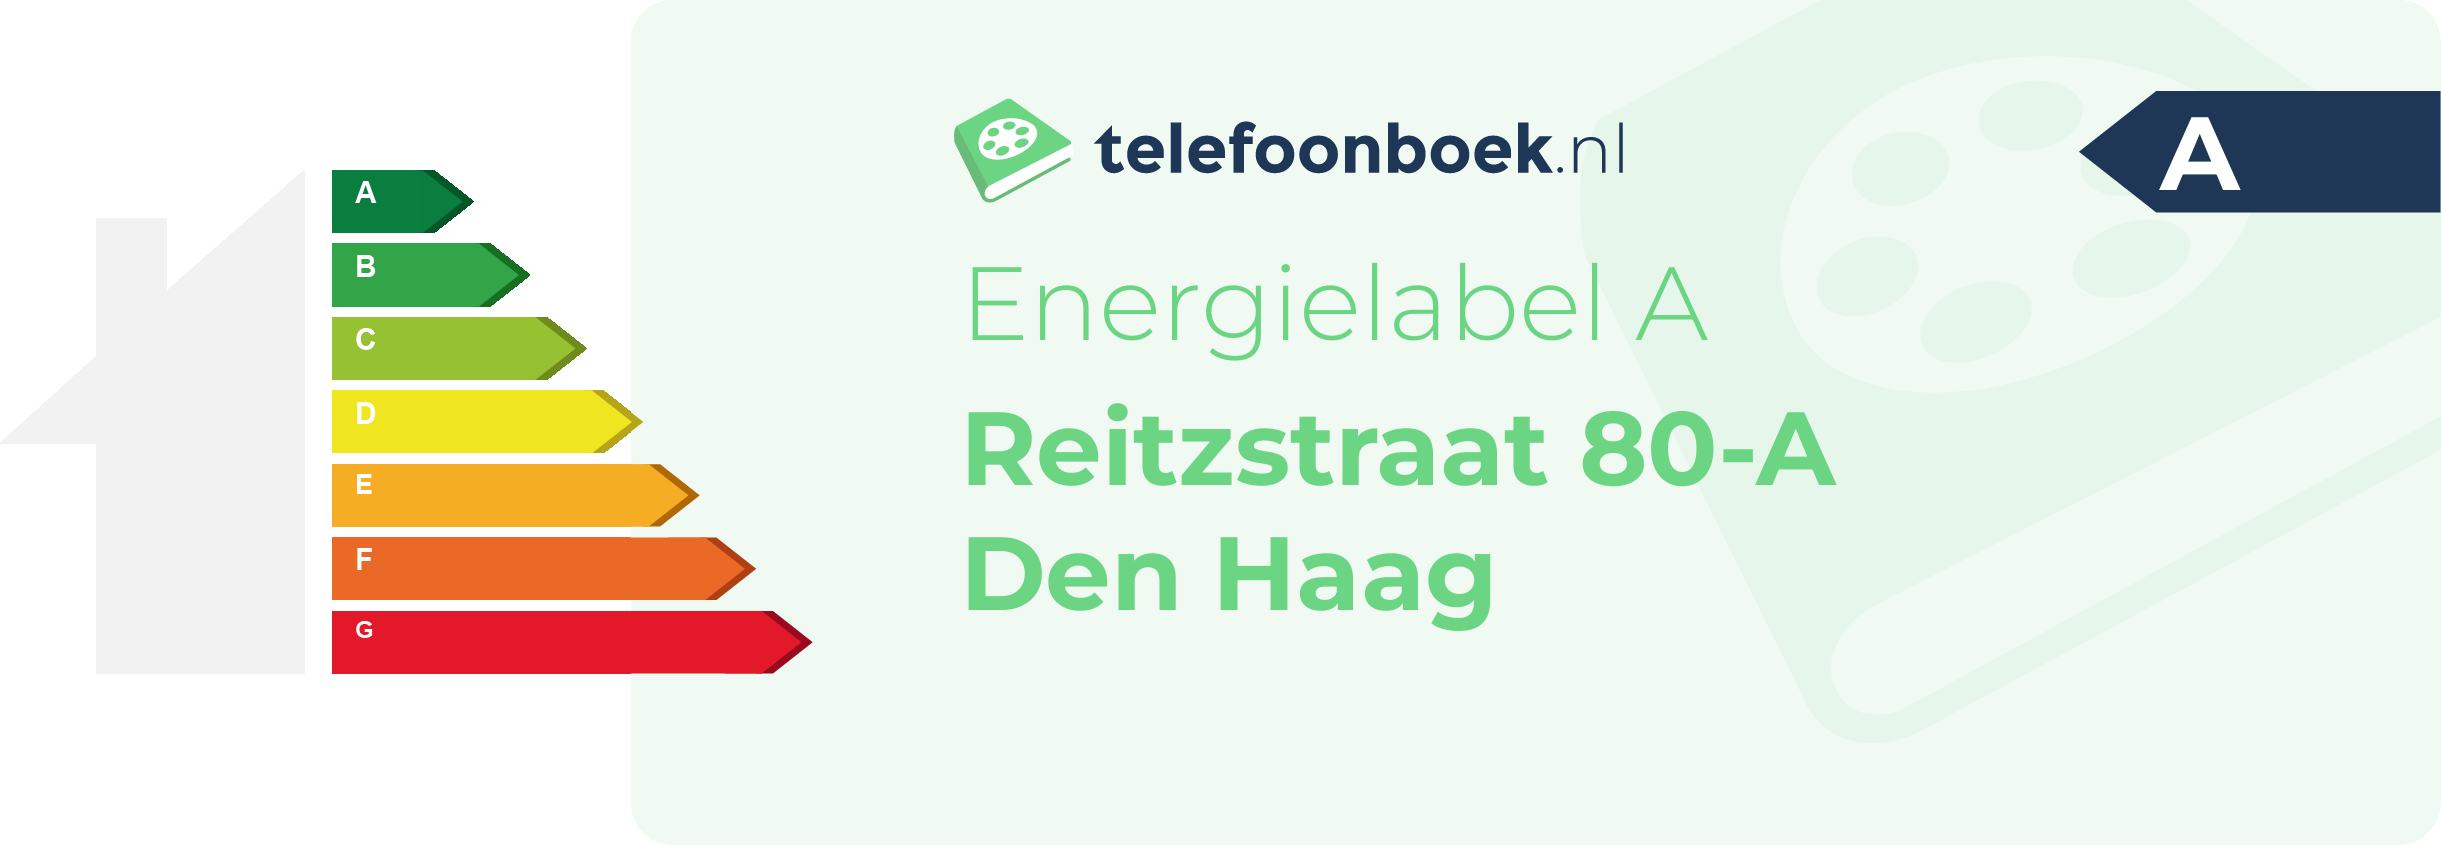 Energielabel Reitzstraat 80-A Den Haag